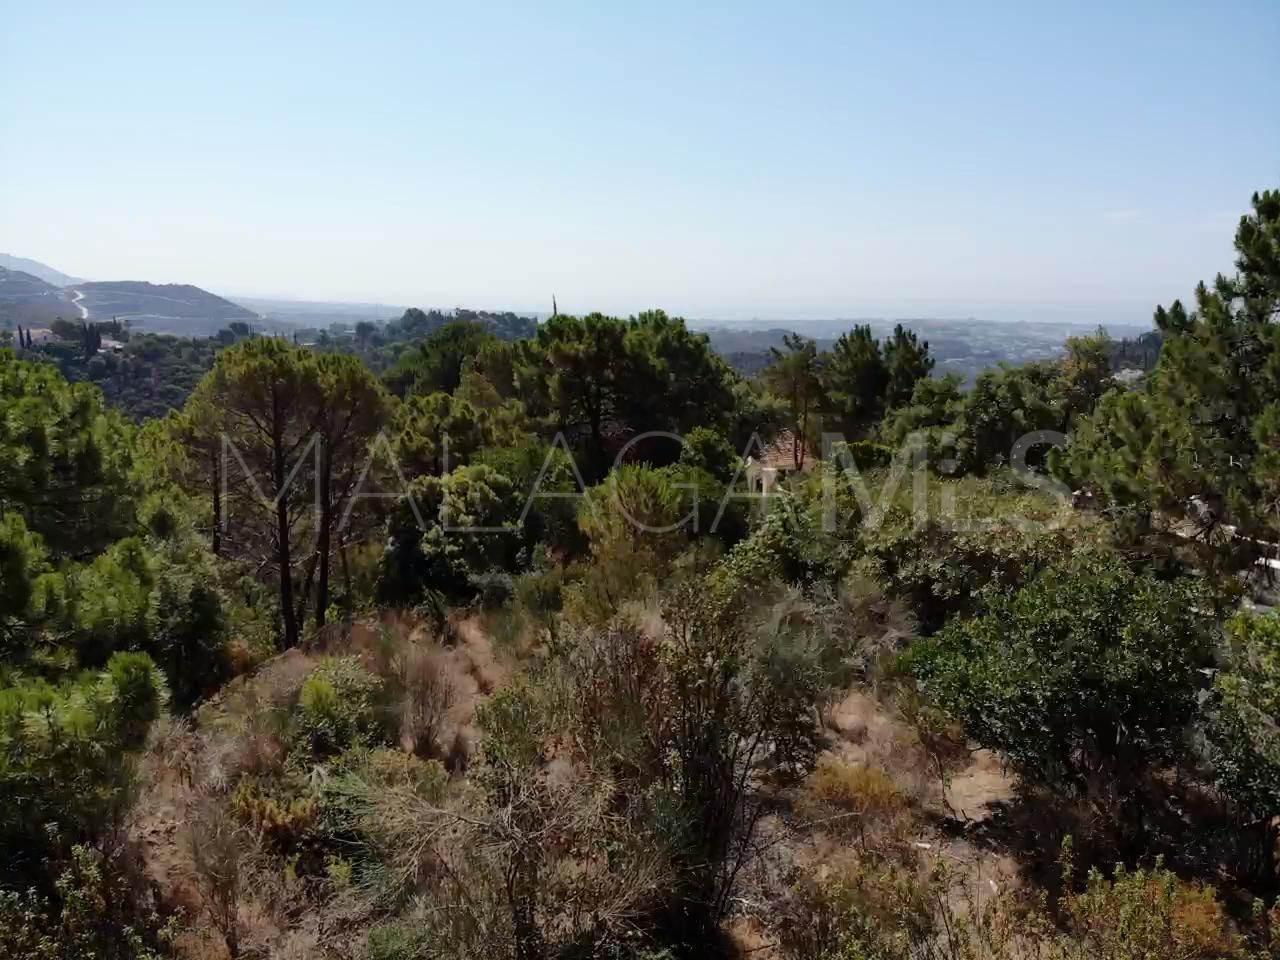 Terrain for sale in El Madroñal